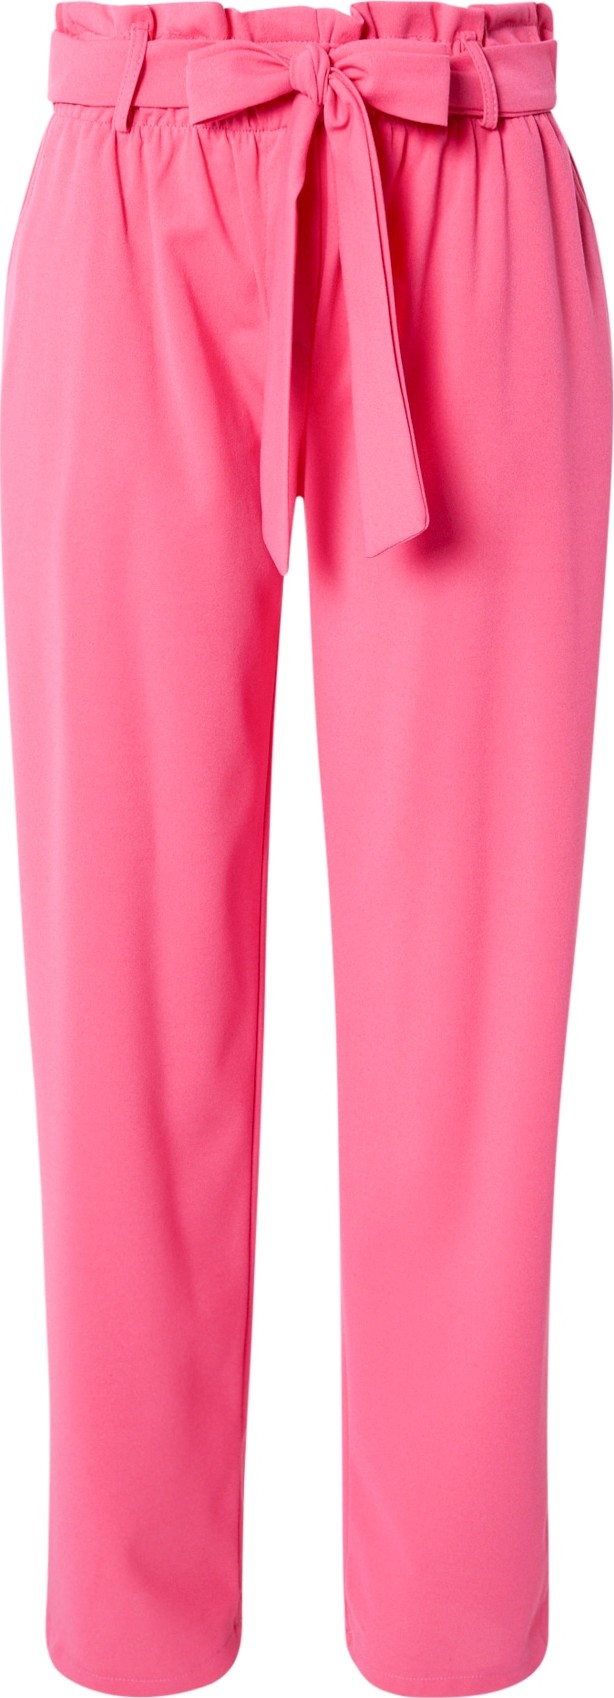 Kalhoty Sublevel pink